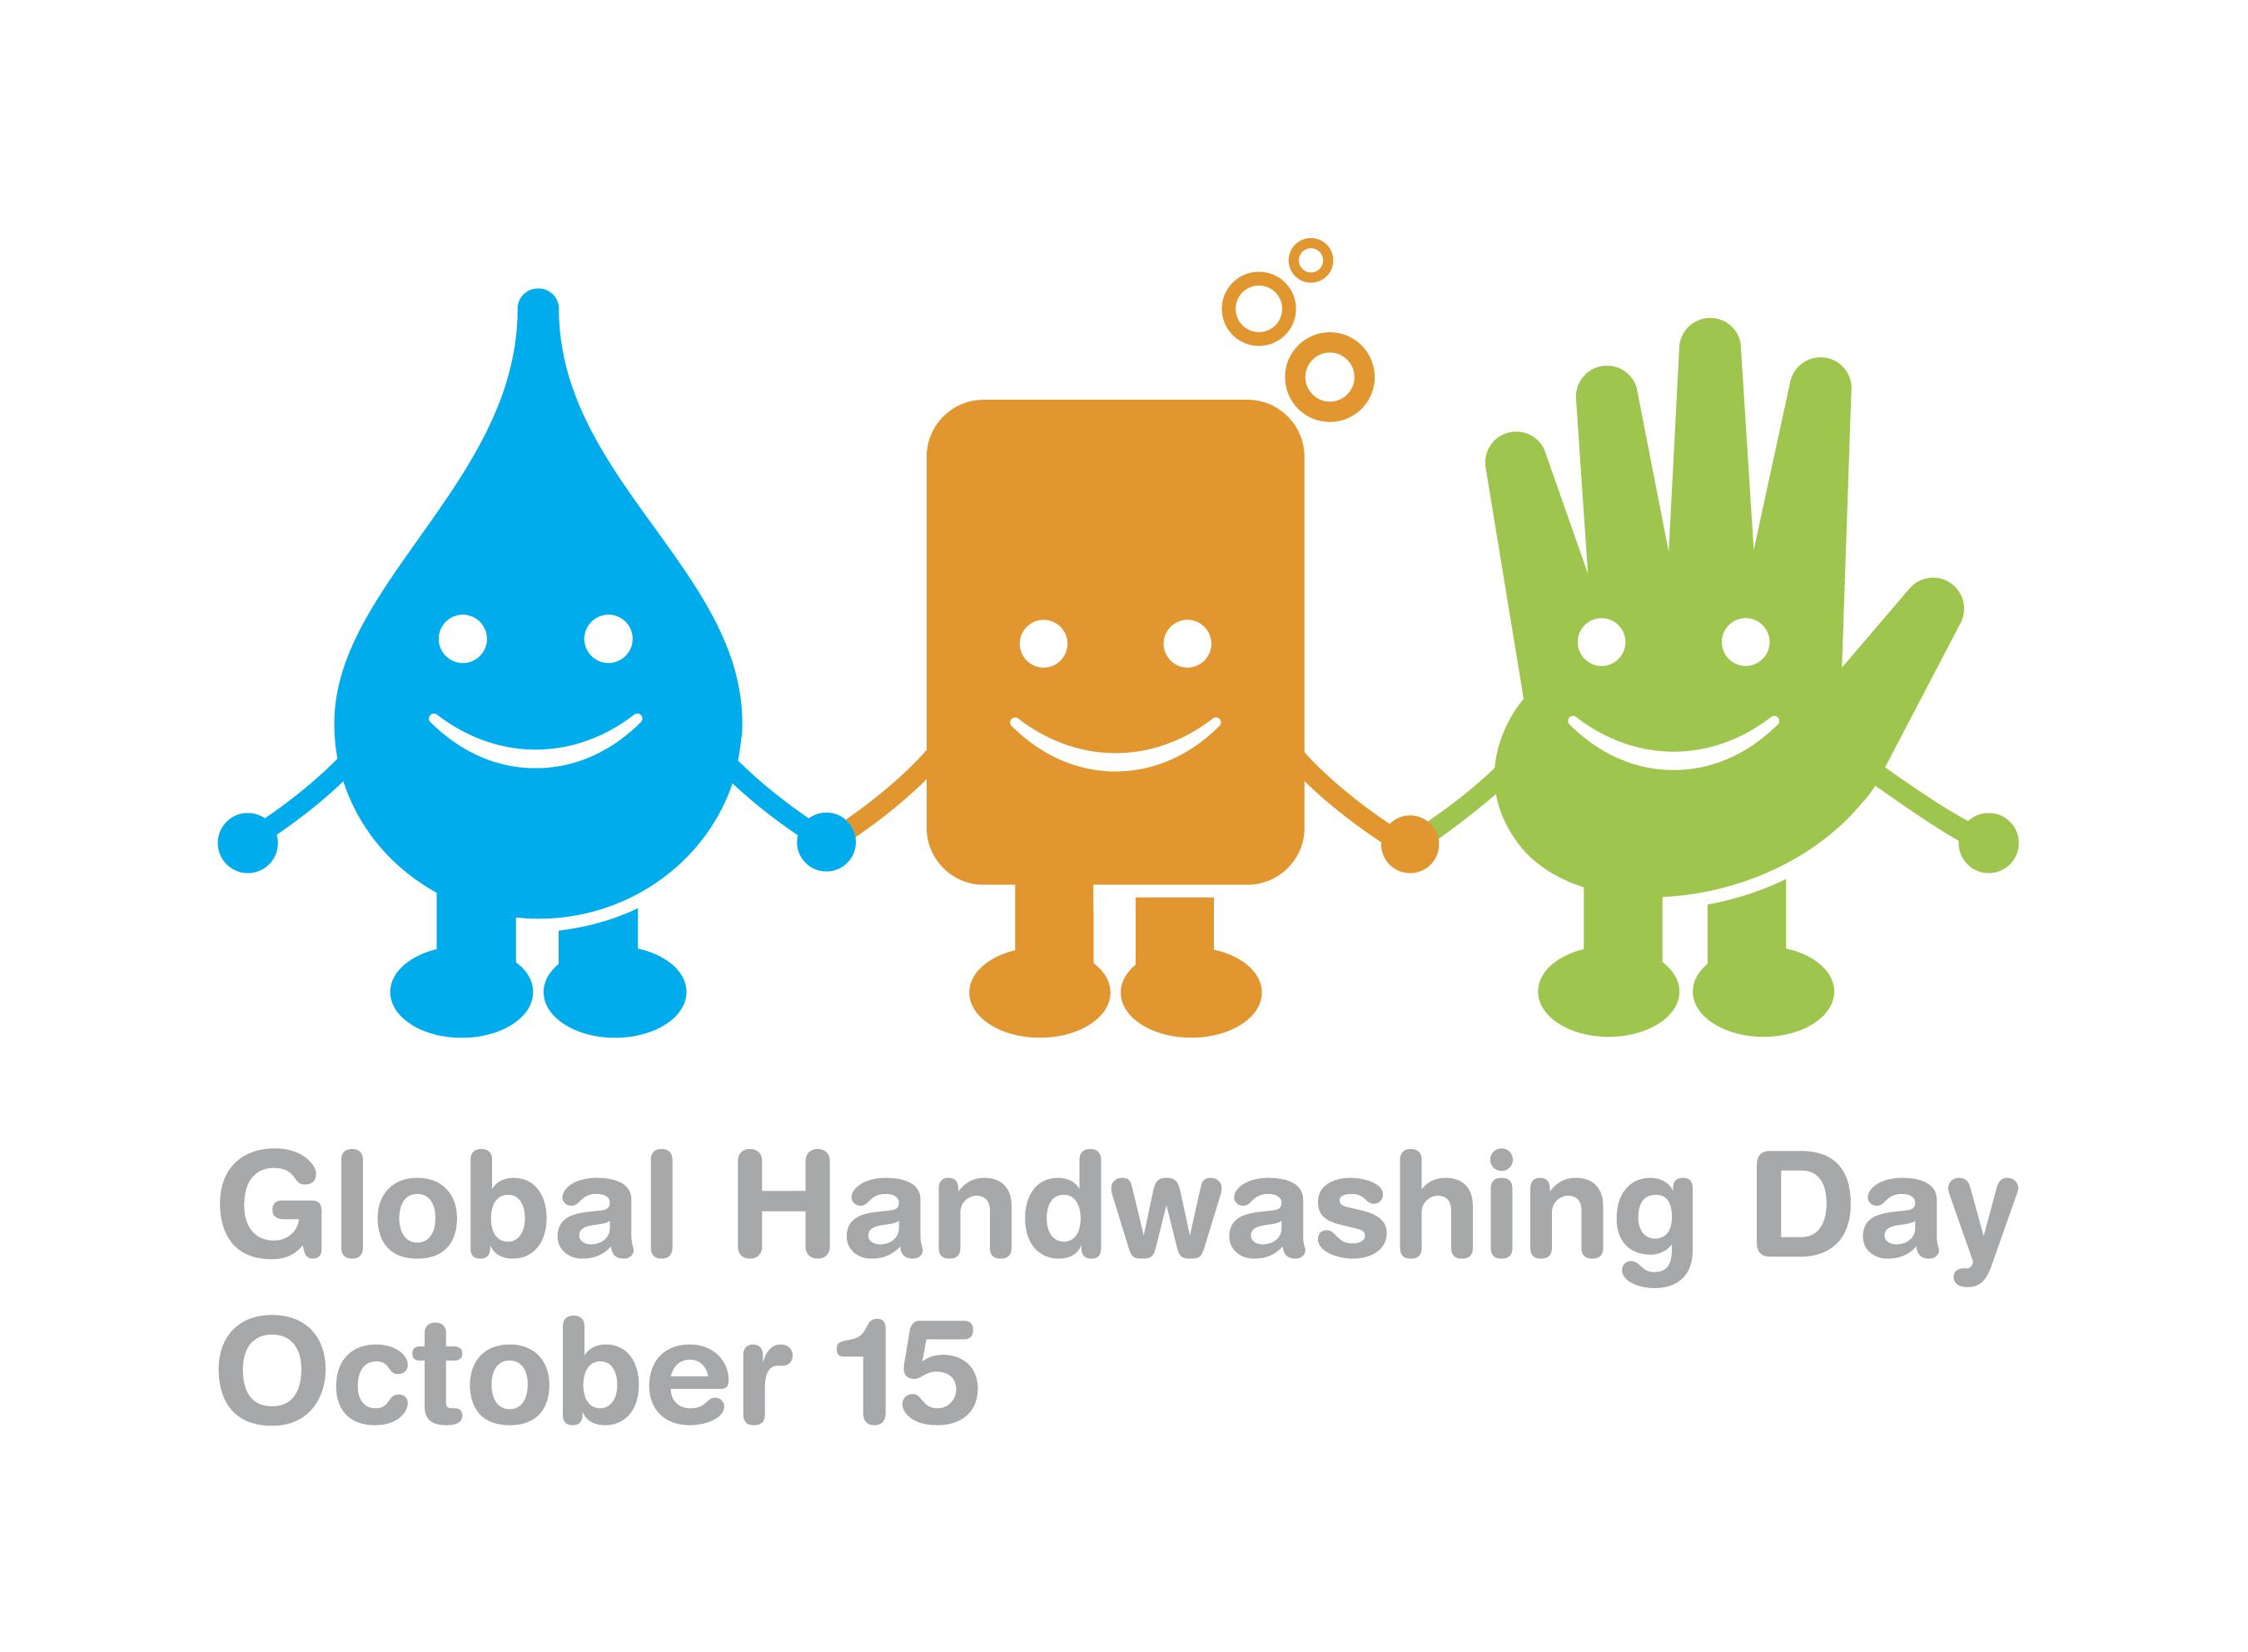 الأيام الصحية لعام 2016 اليوم العالمي لغسل اليدين